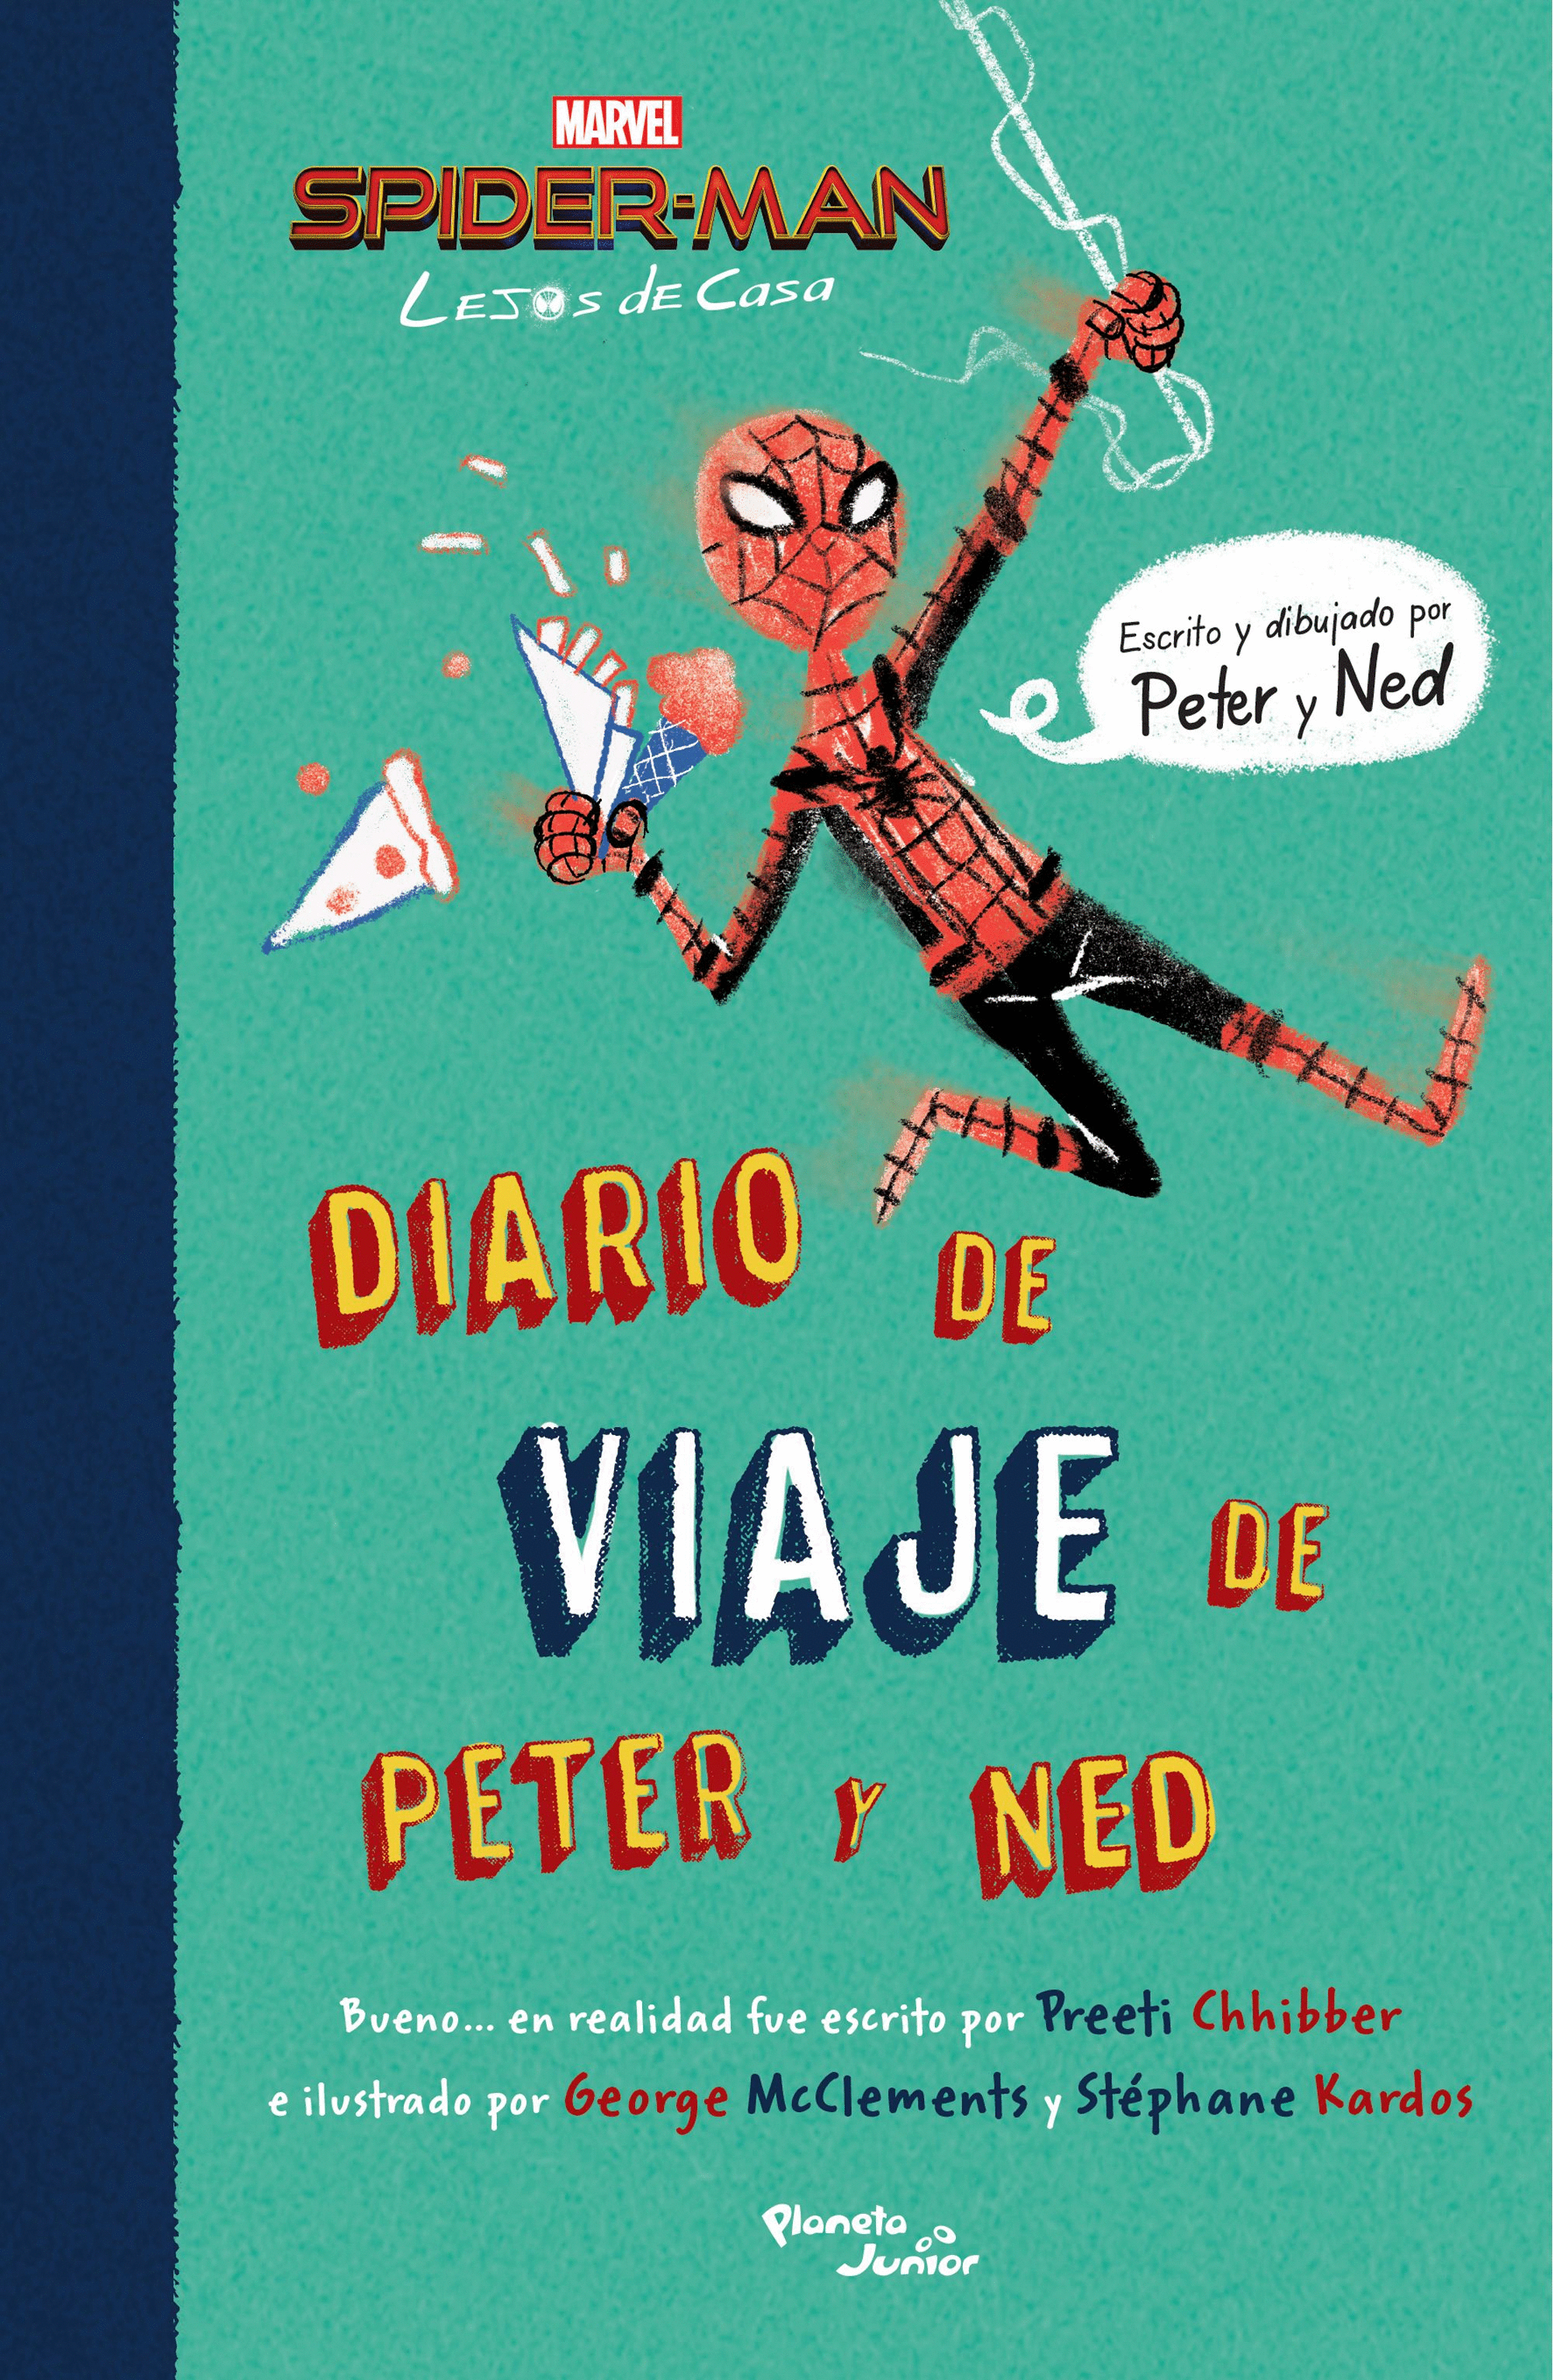 SPIDER-MAN. LEJOS DE CASA. DIARIO DE VIAJE DE PETER Y NED